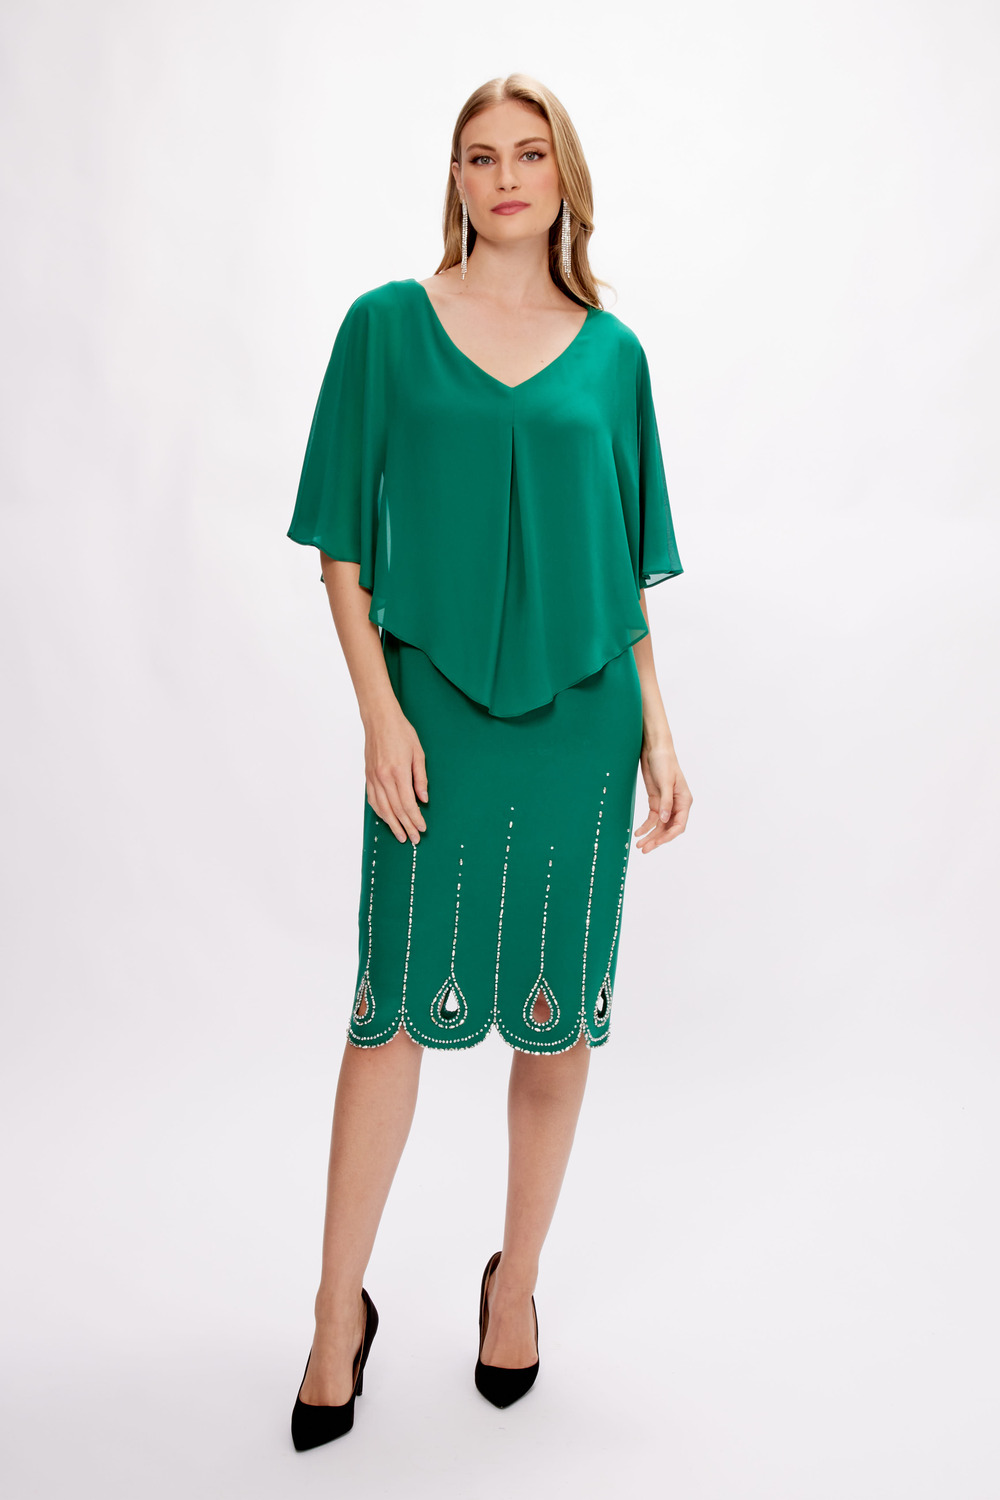 Chiffon Overlay Dress Style 233734. True Emerald